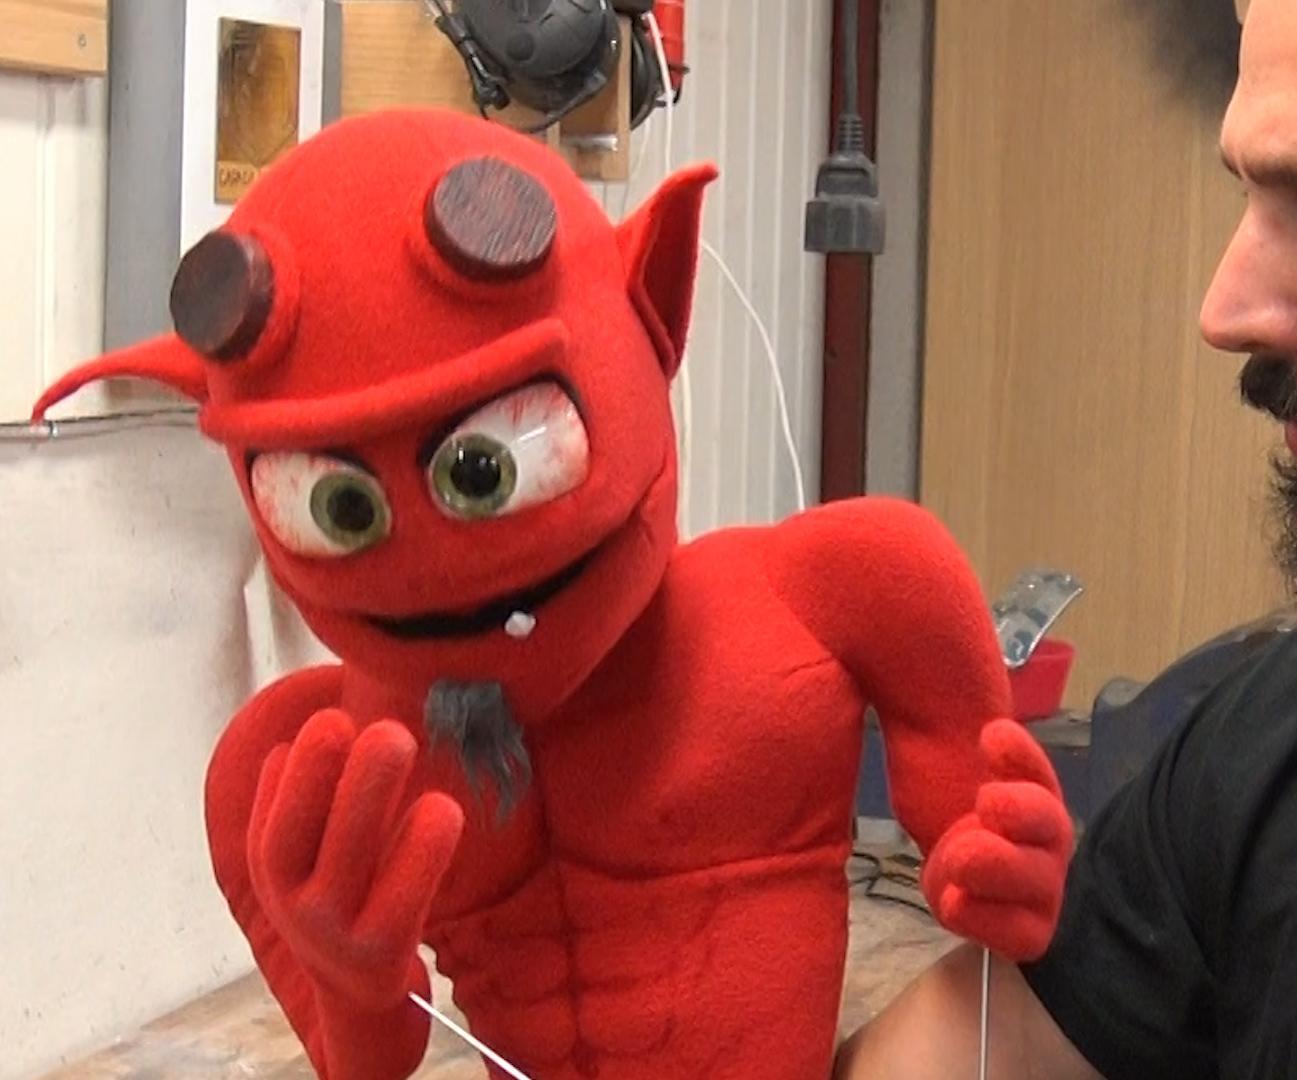 Devil Puppet / Workshop Friend?